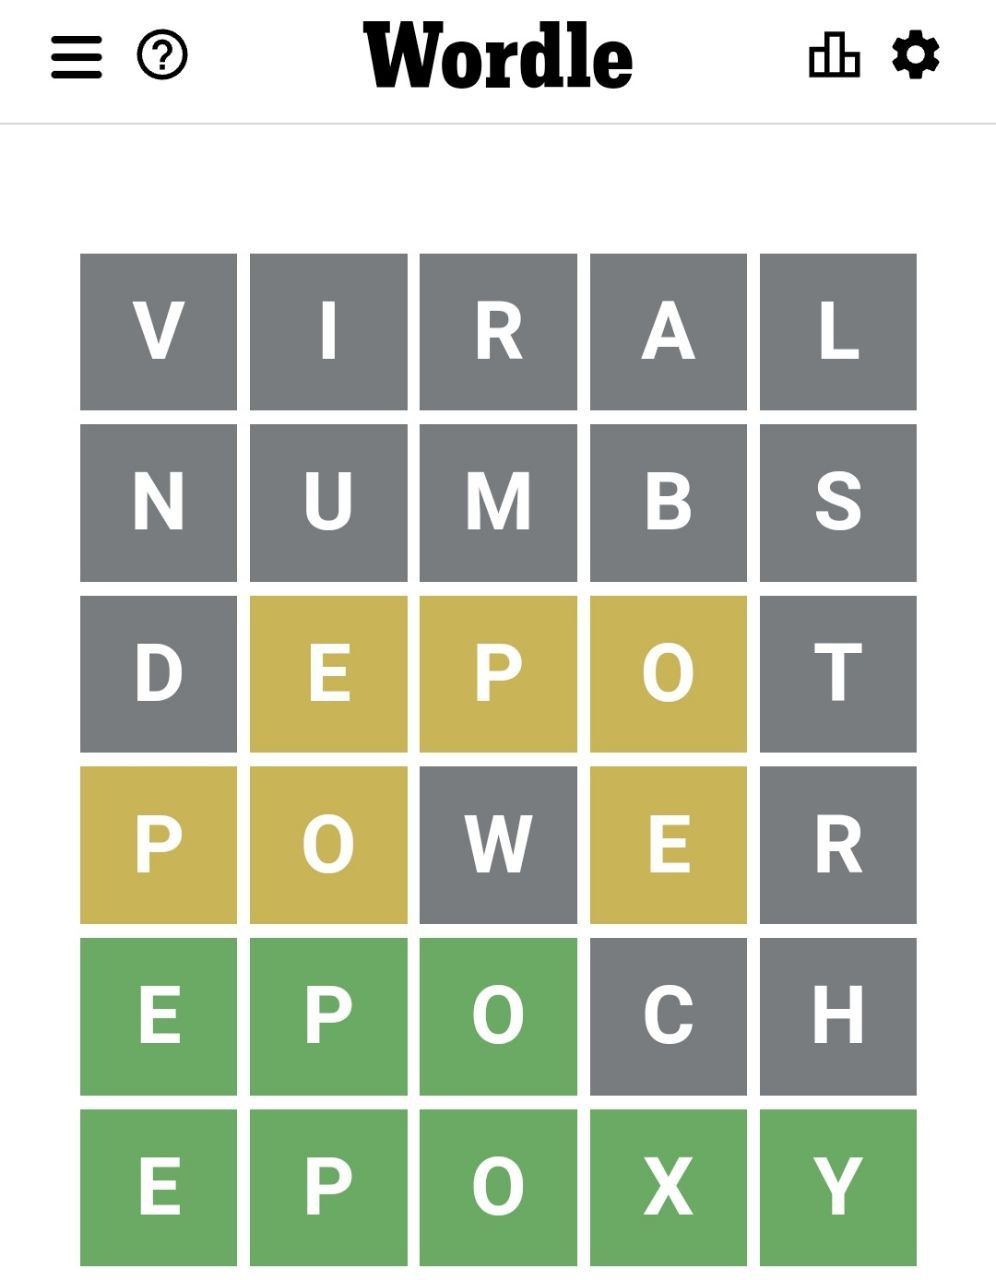 Kunci Jawaban Game Wordle Hari Ini tanggal 26 Maret 2022